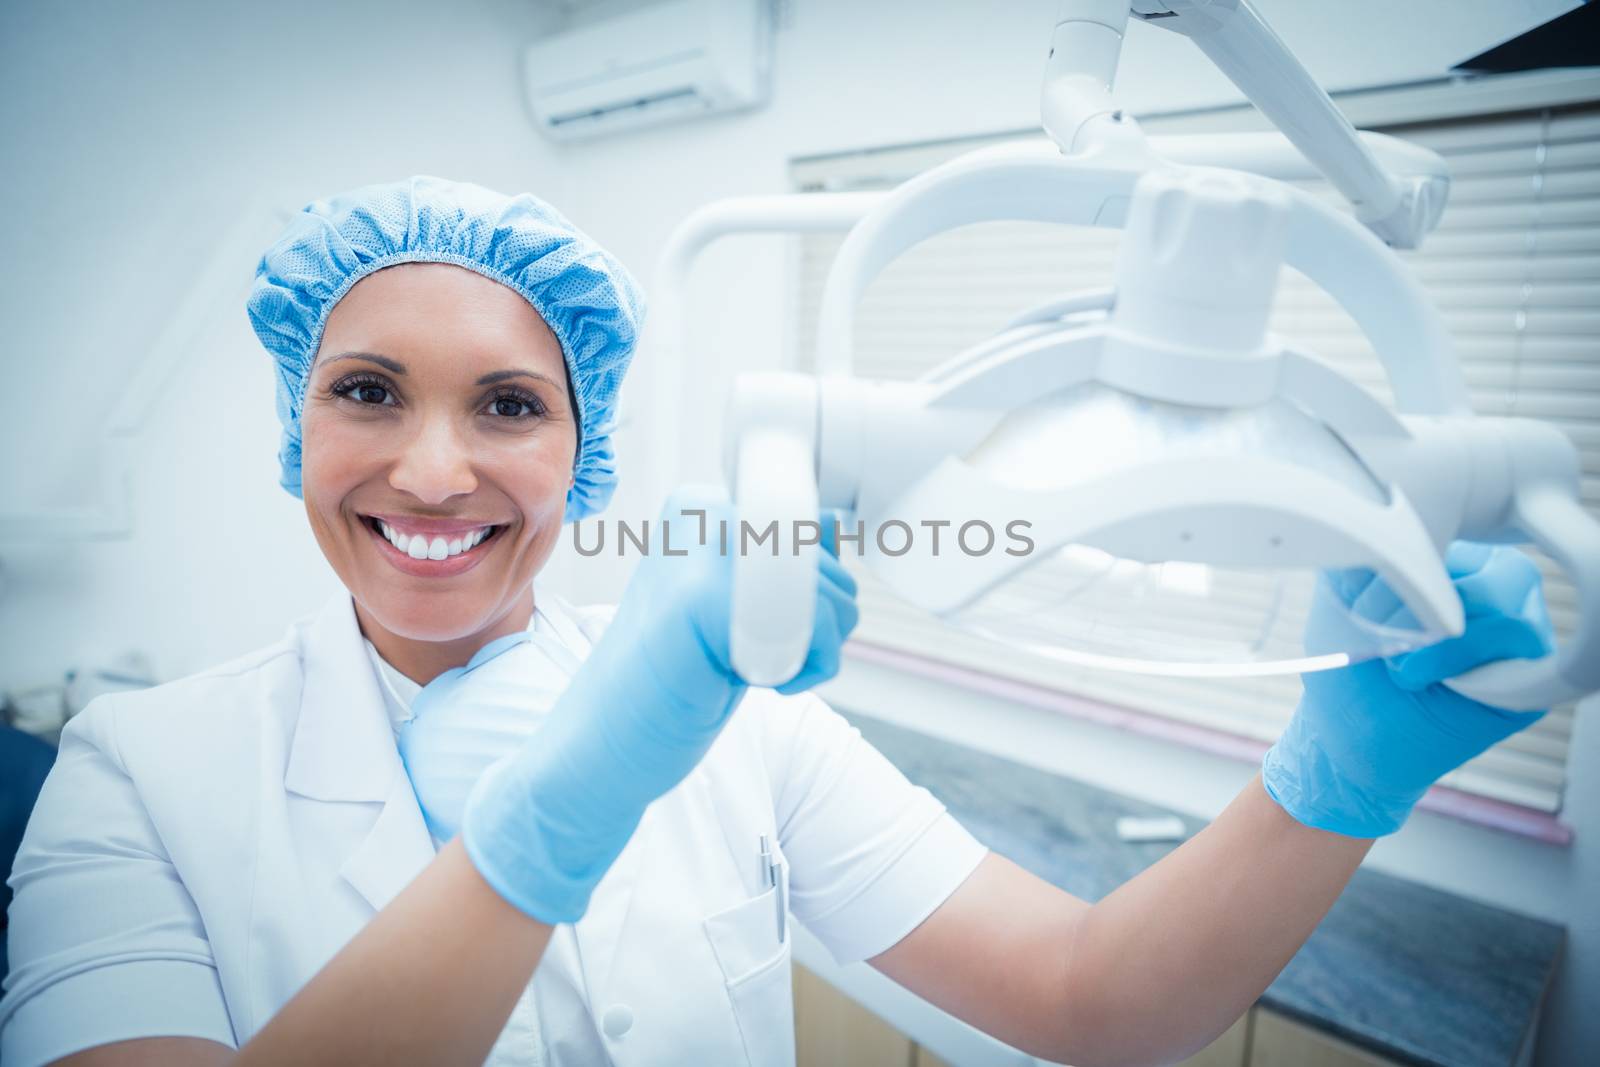 Portrait of smiling female dentist adjusting light